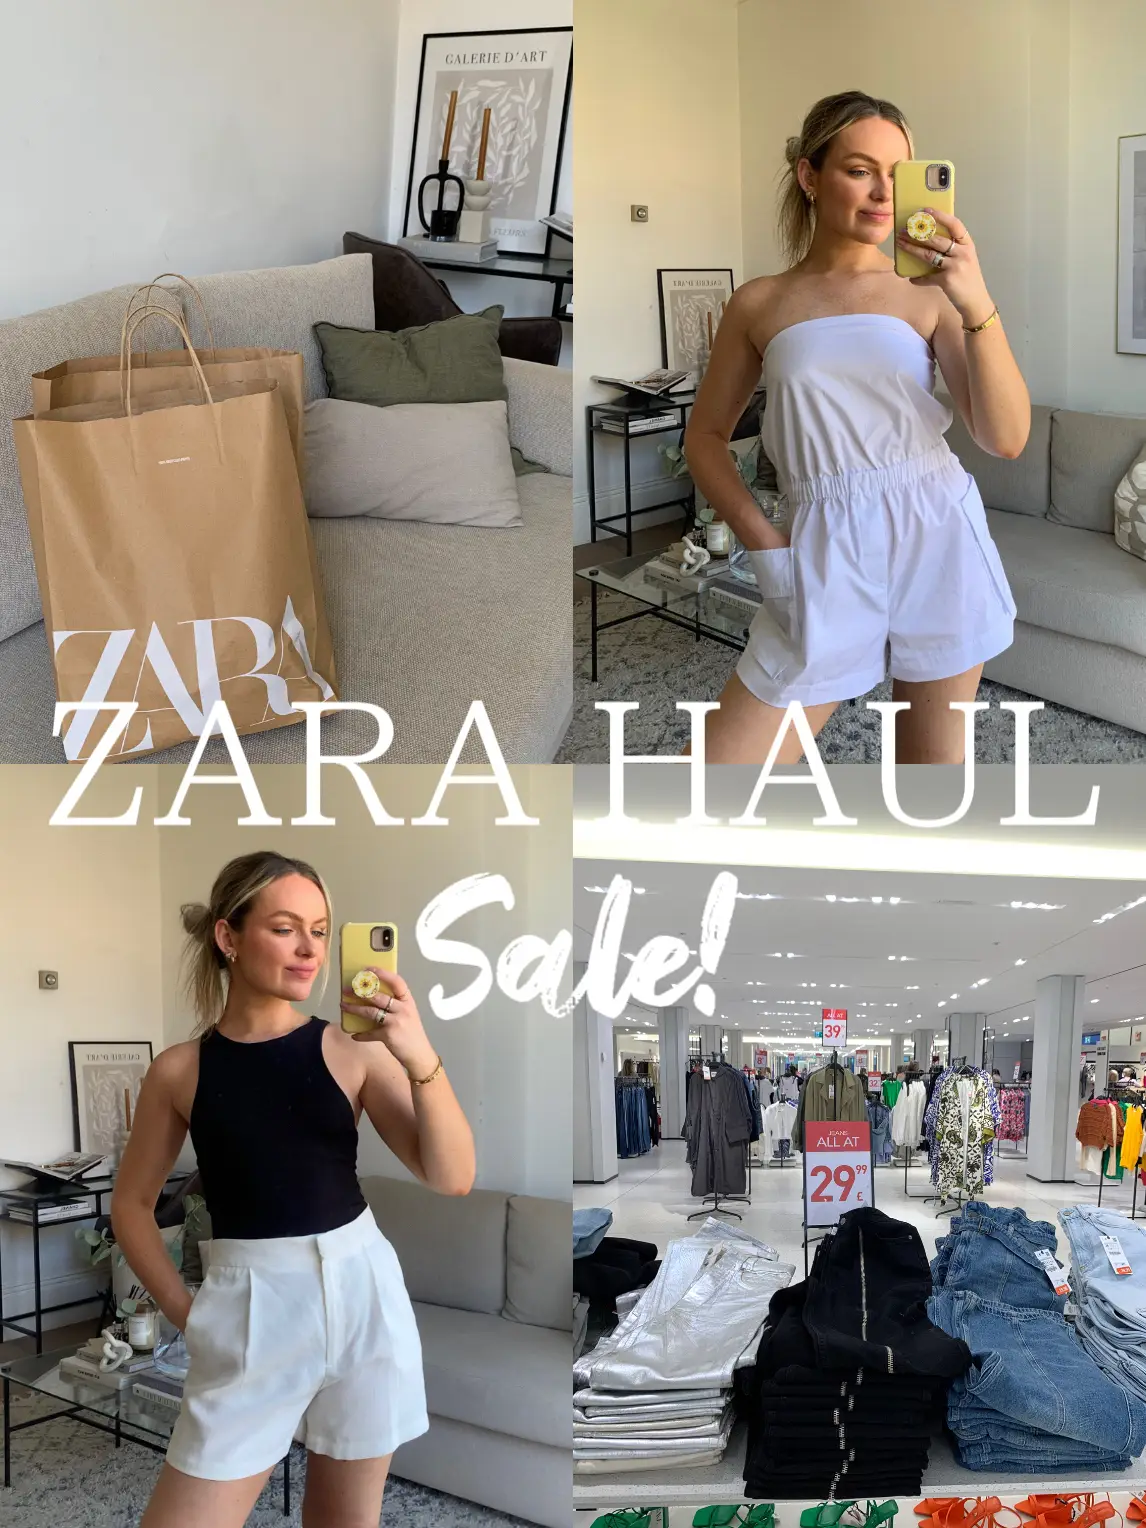 Zara METALLIC THREAD KNIT SLIP DRESS